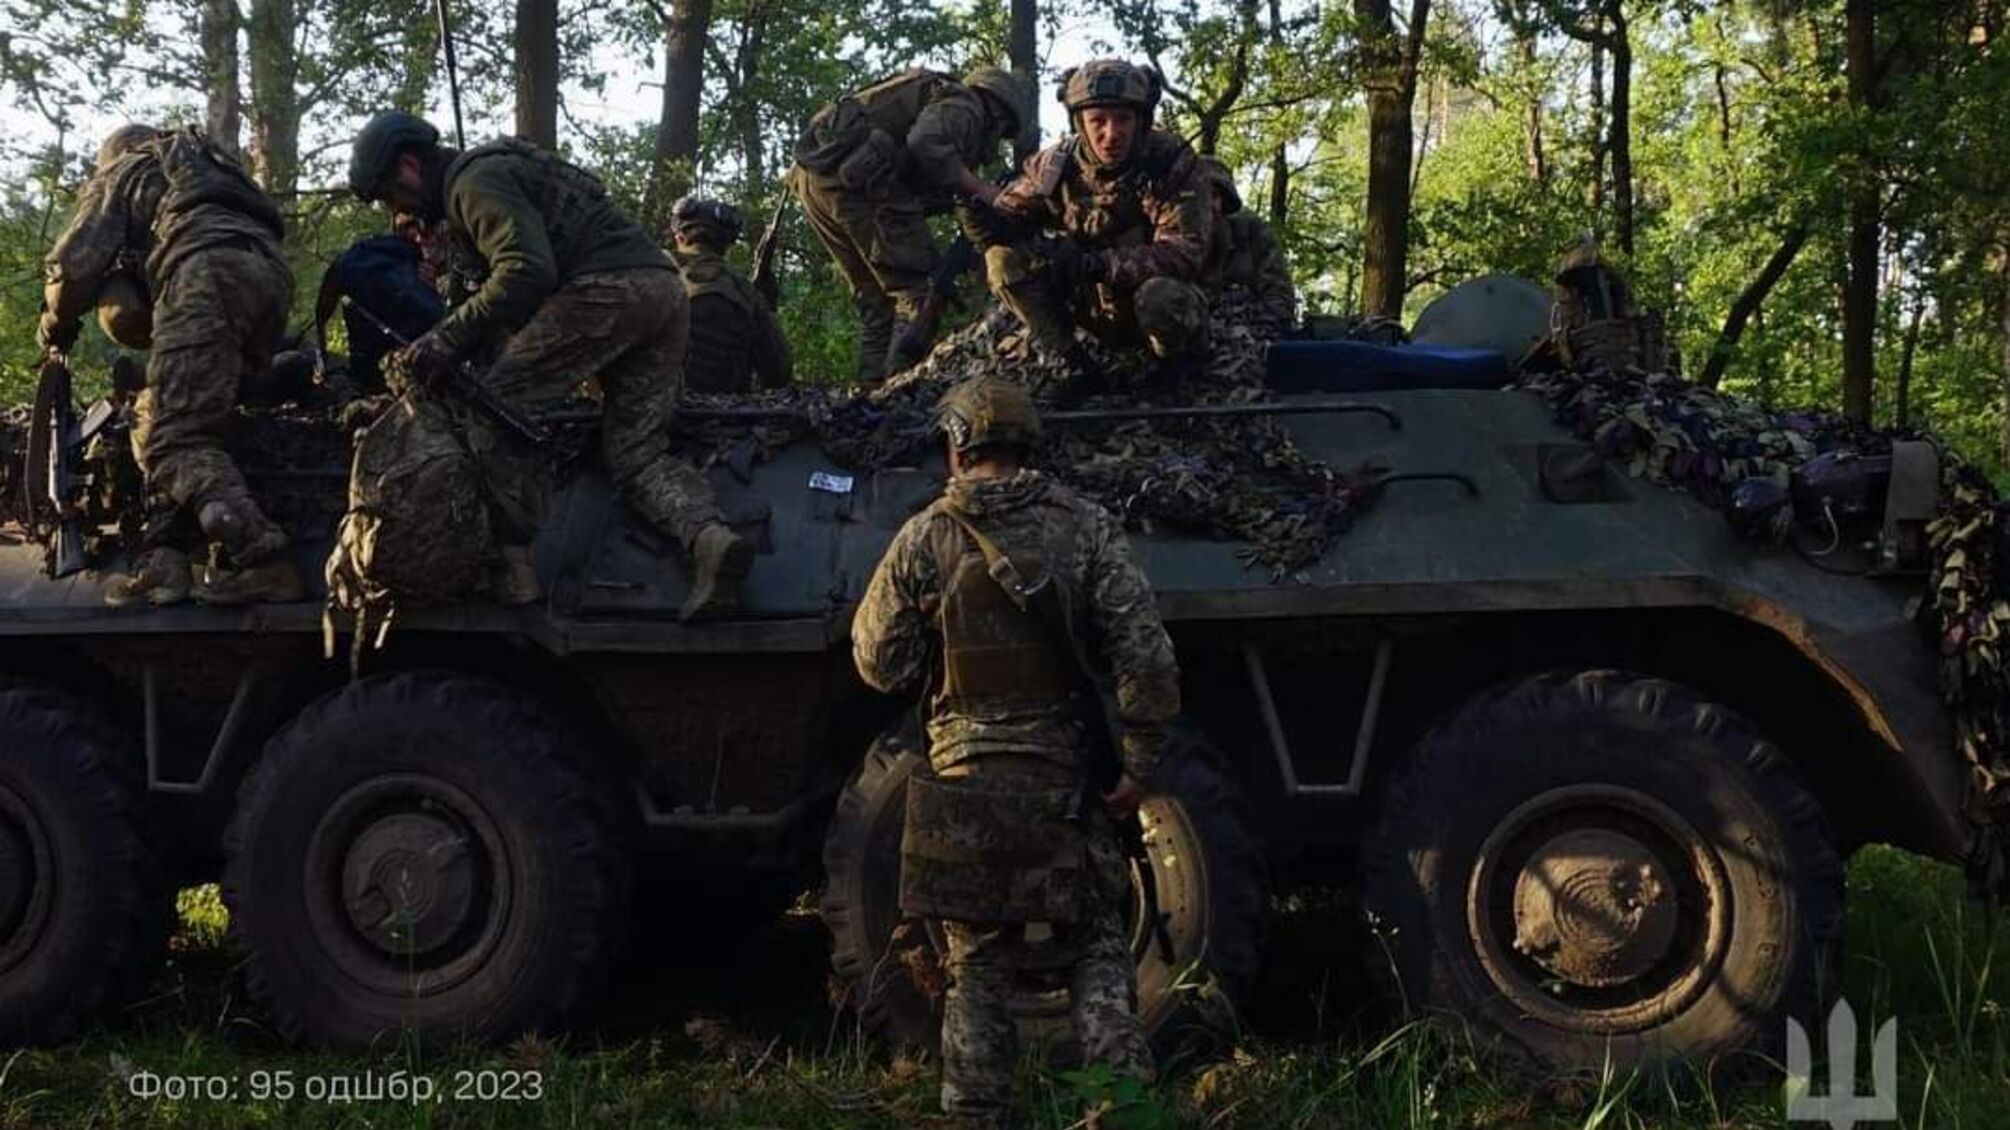  Розпочалася 617 доба широкомасштабної збройної агресії російської федерації проти України